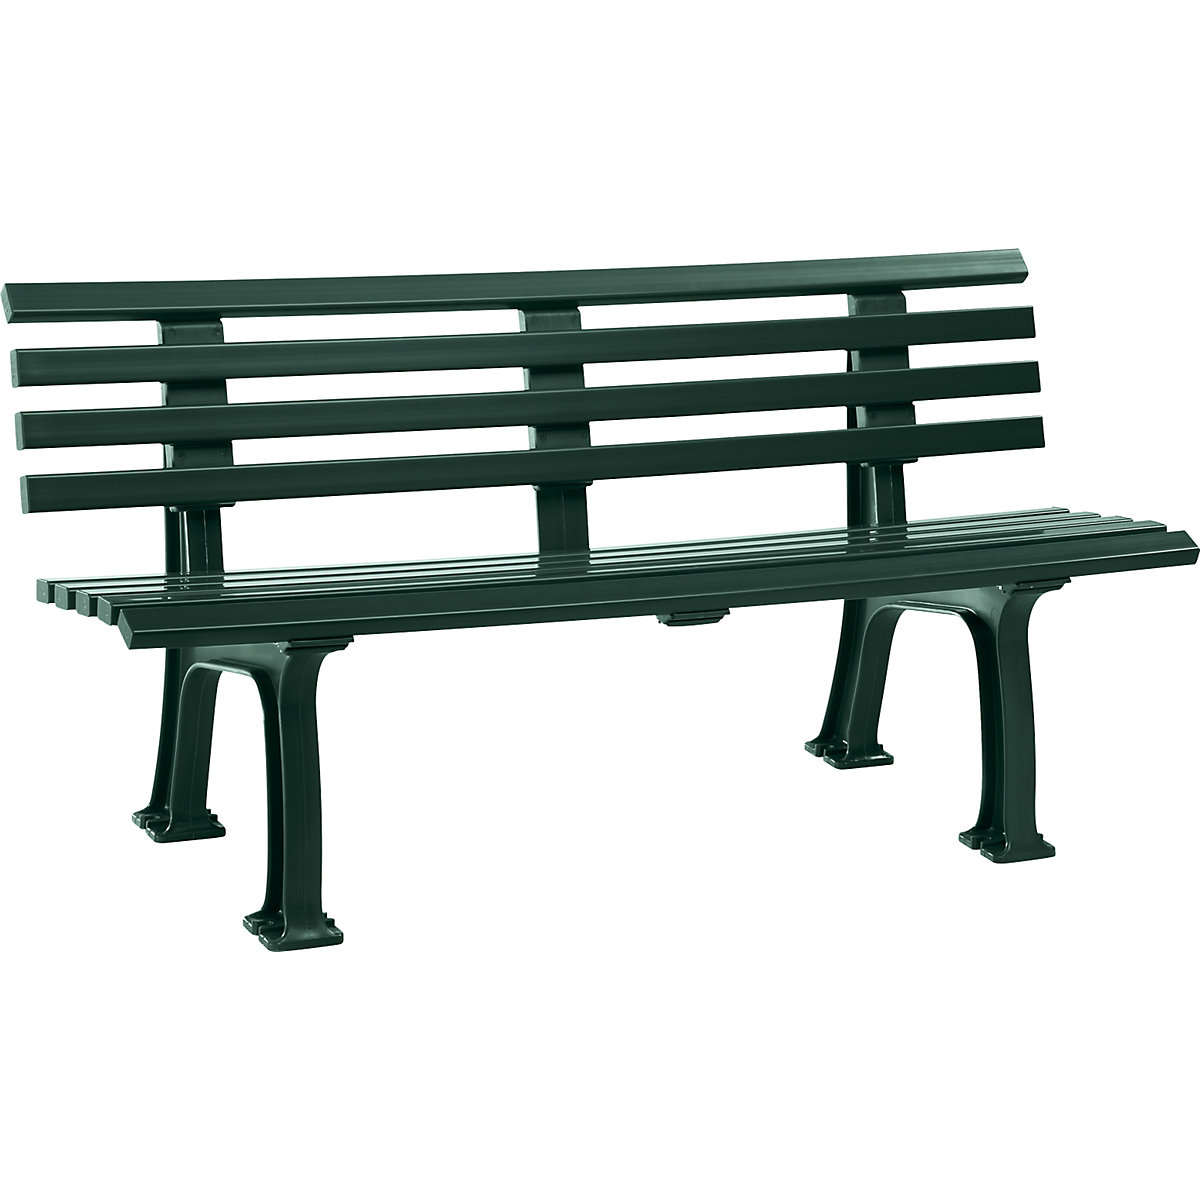 Parková lavička z plastu, s 9 lištami, šírka 1500 mm, machová zelená-8